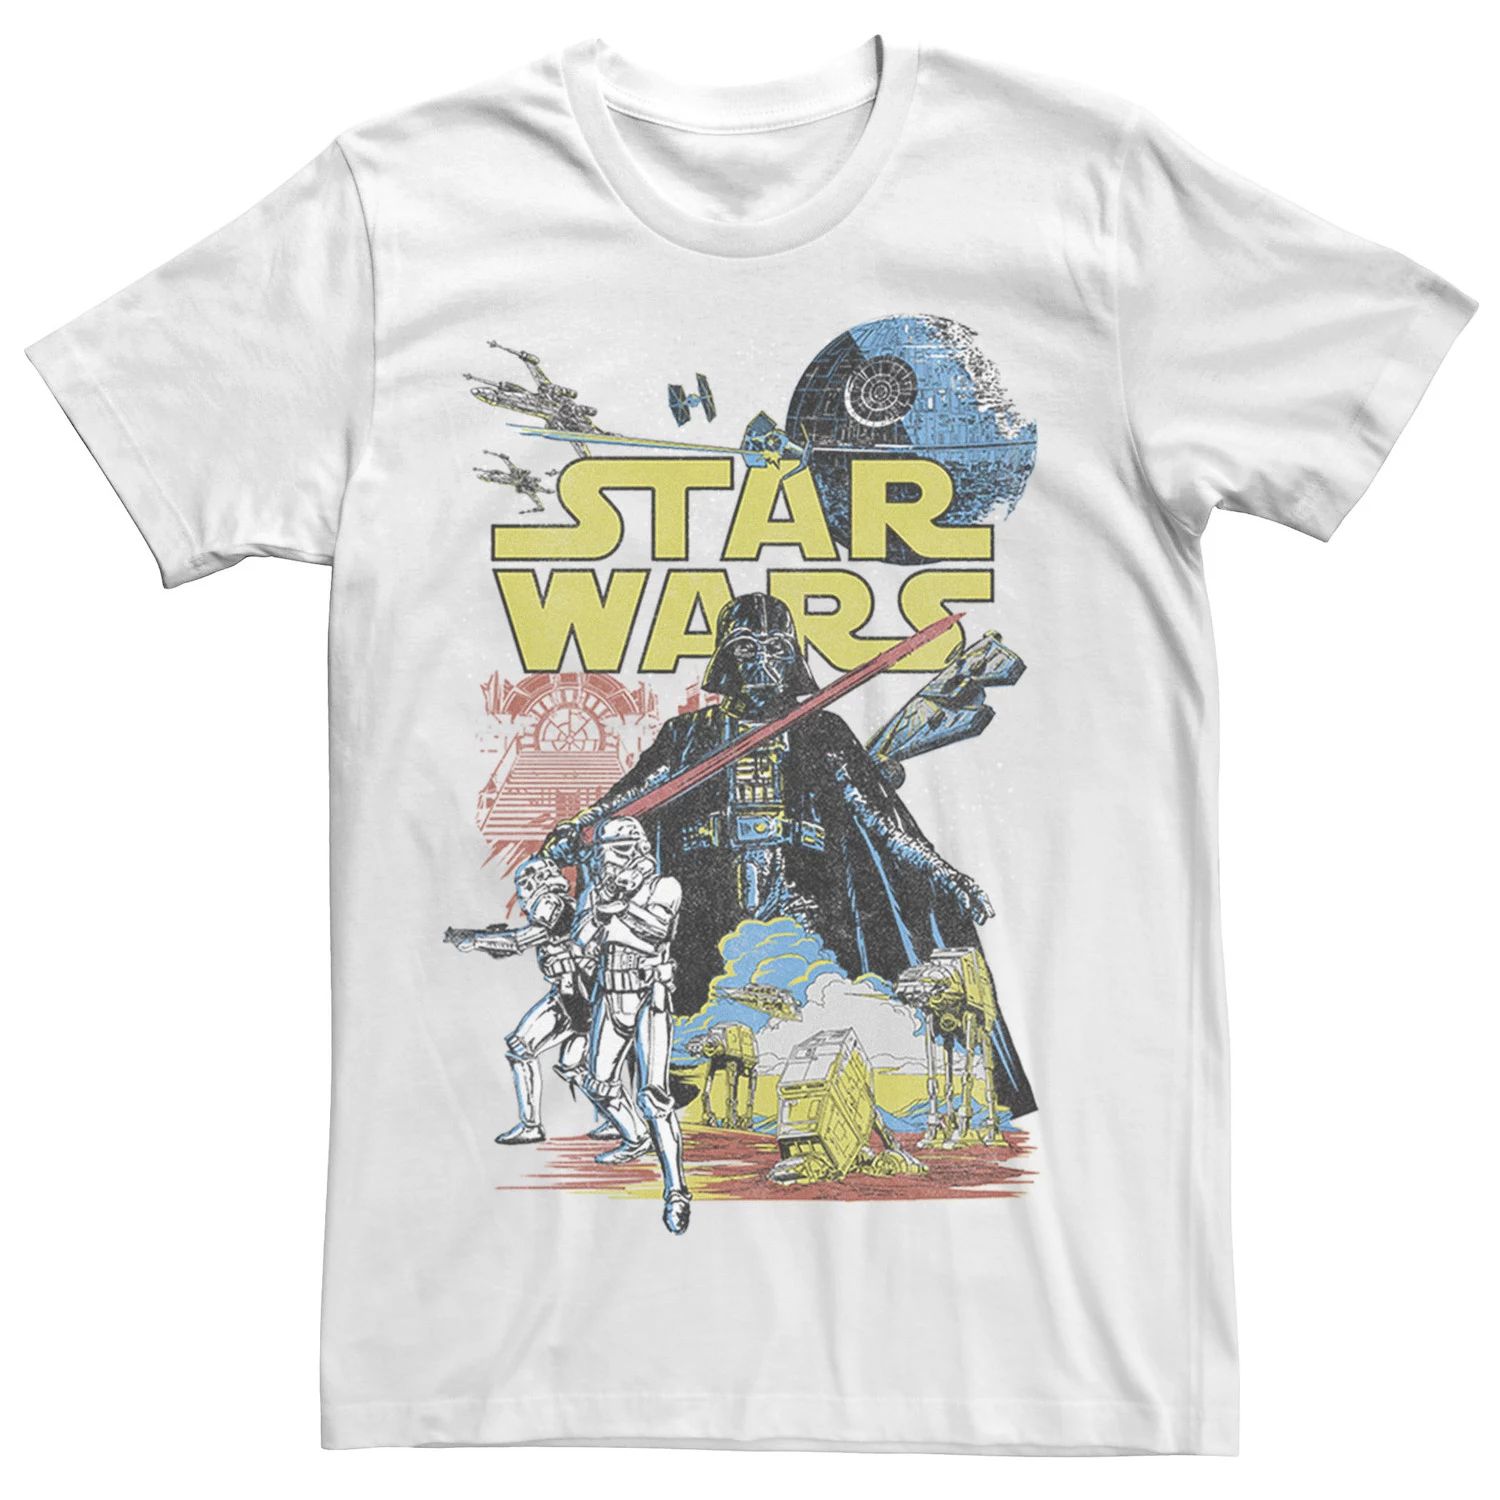 Мужская классическая футболка с графическим плакатом Rebel, White Star Wars, белый мужская классическая футболка с графическим плакатом rebel star wars светло синий